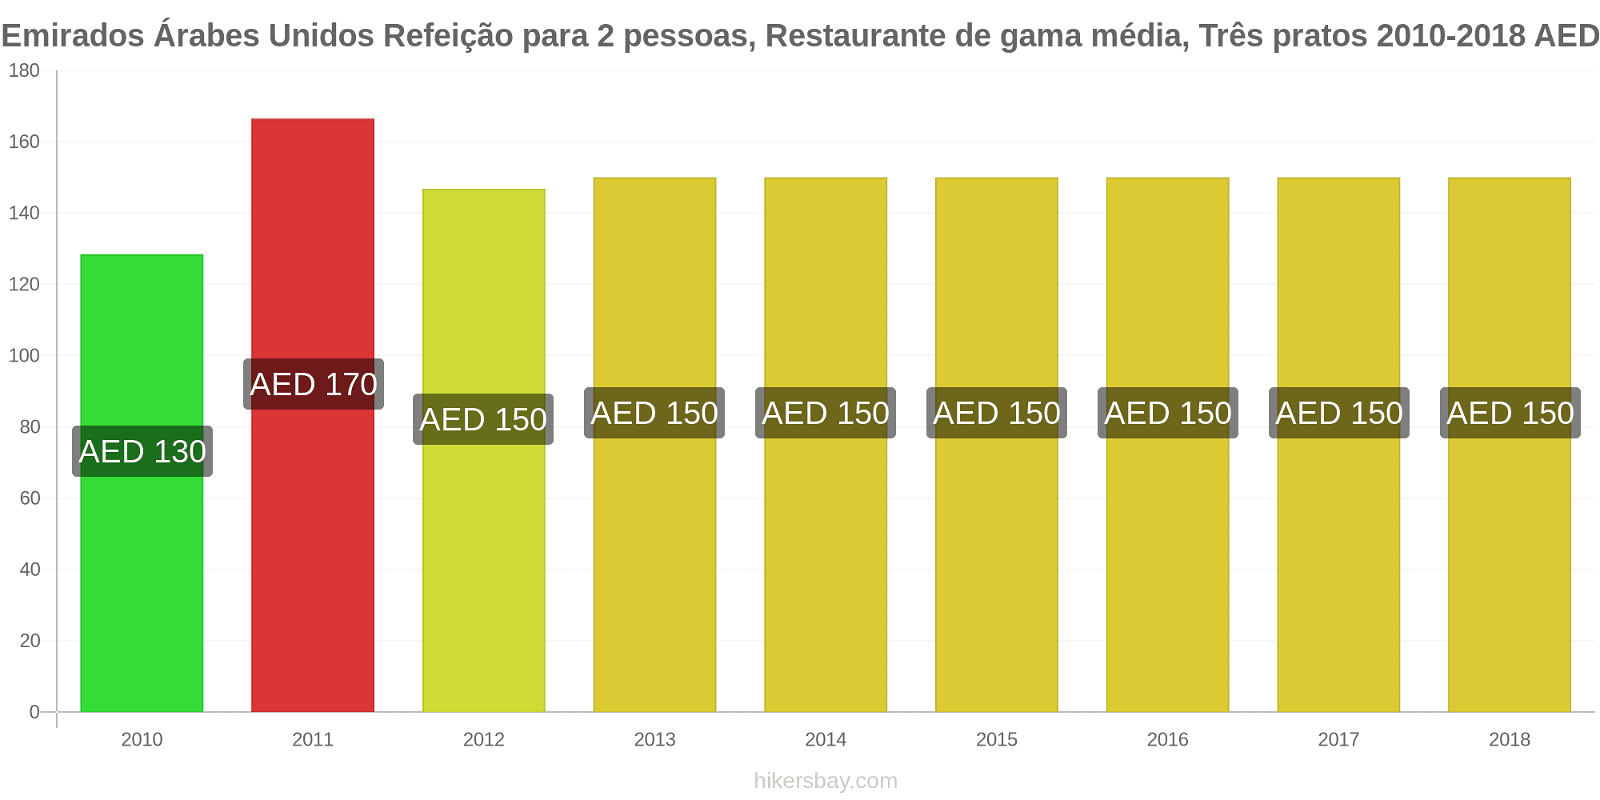 Emirados Árabes Unidos mudanças de preços Refeição para 2 pessoas, restaurante de gama média, três pratos hikersbay.com